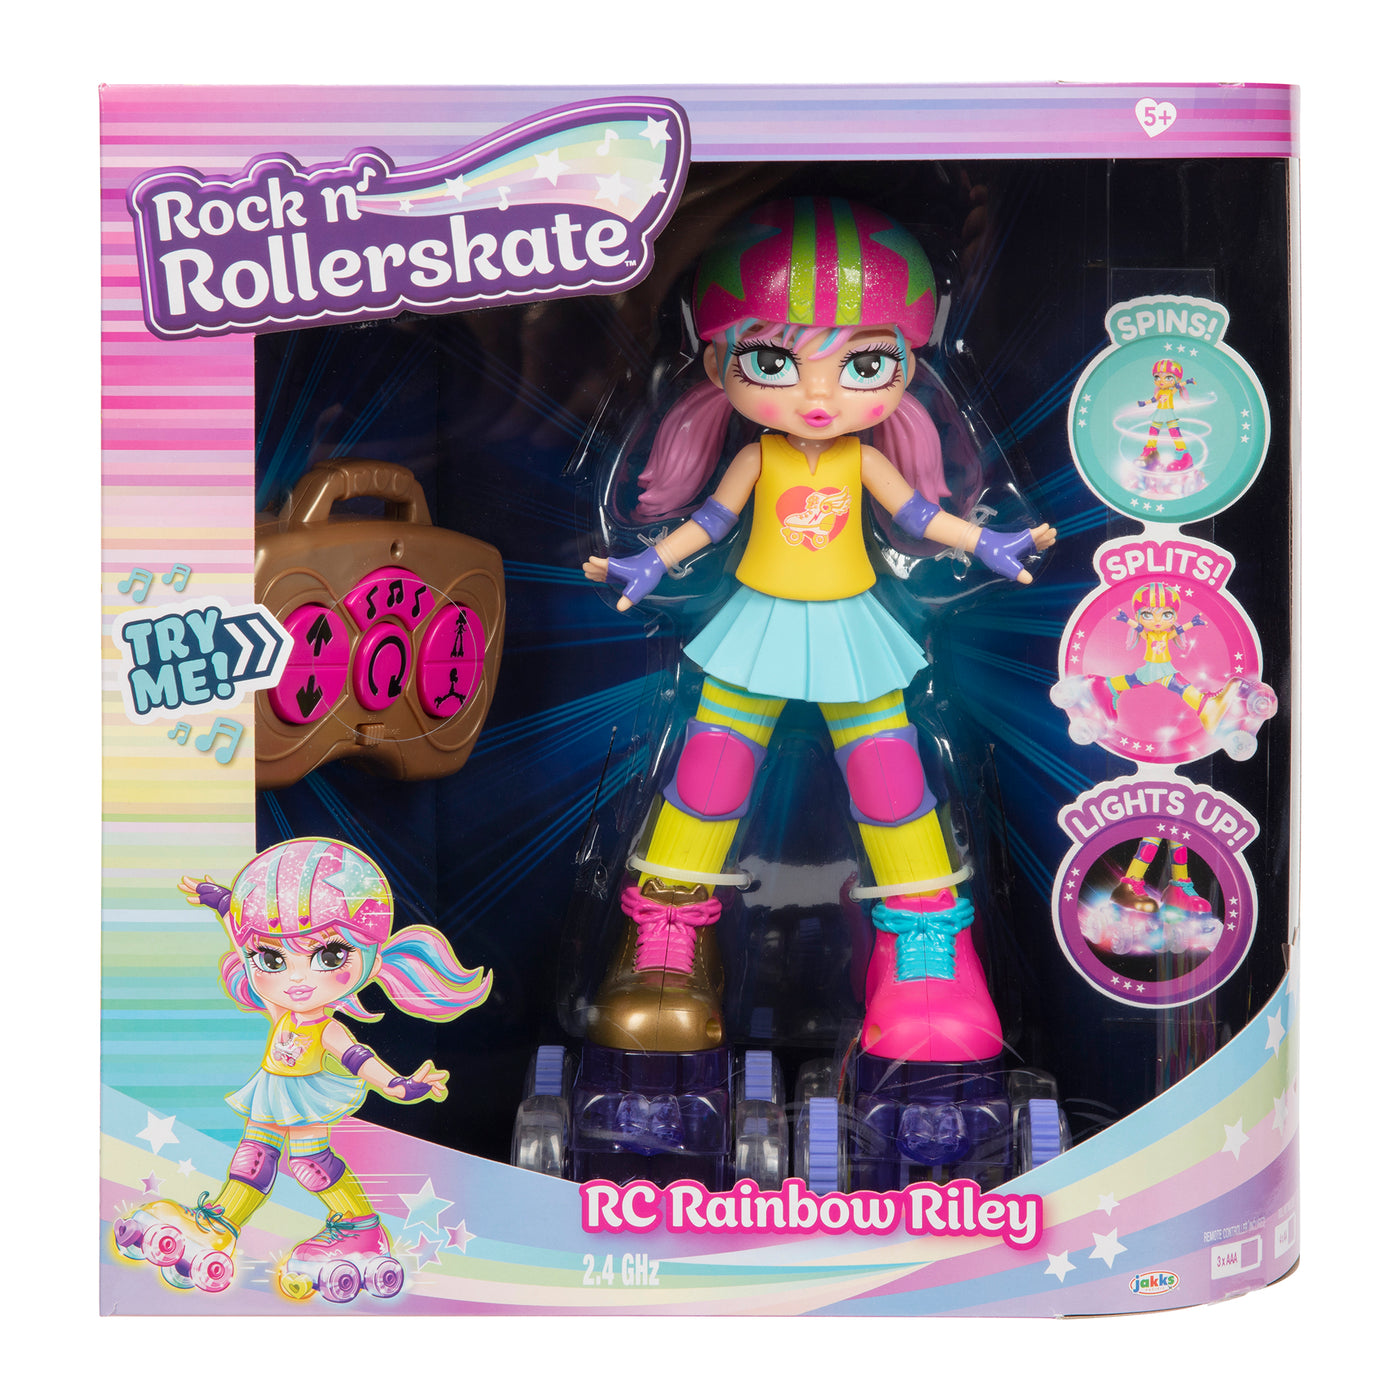 Rock n' Rollerskate Rainbow Riley